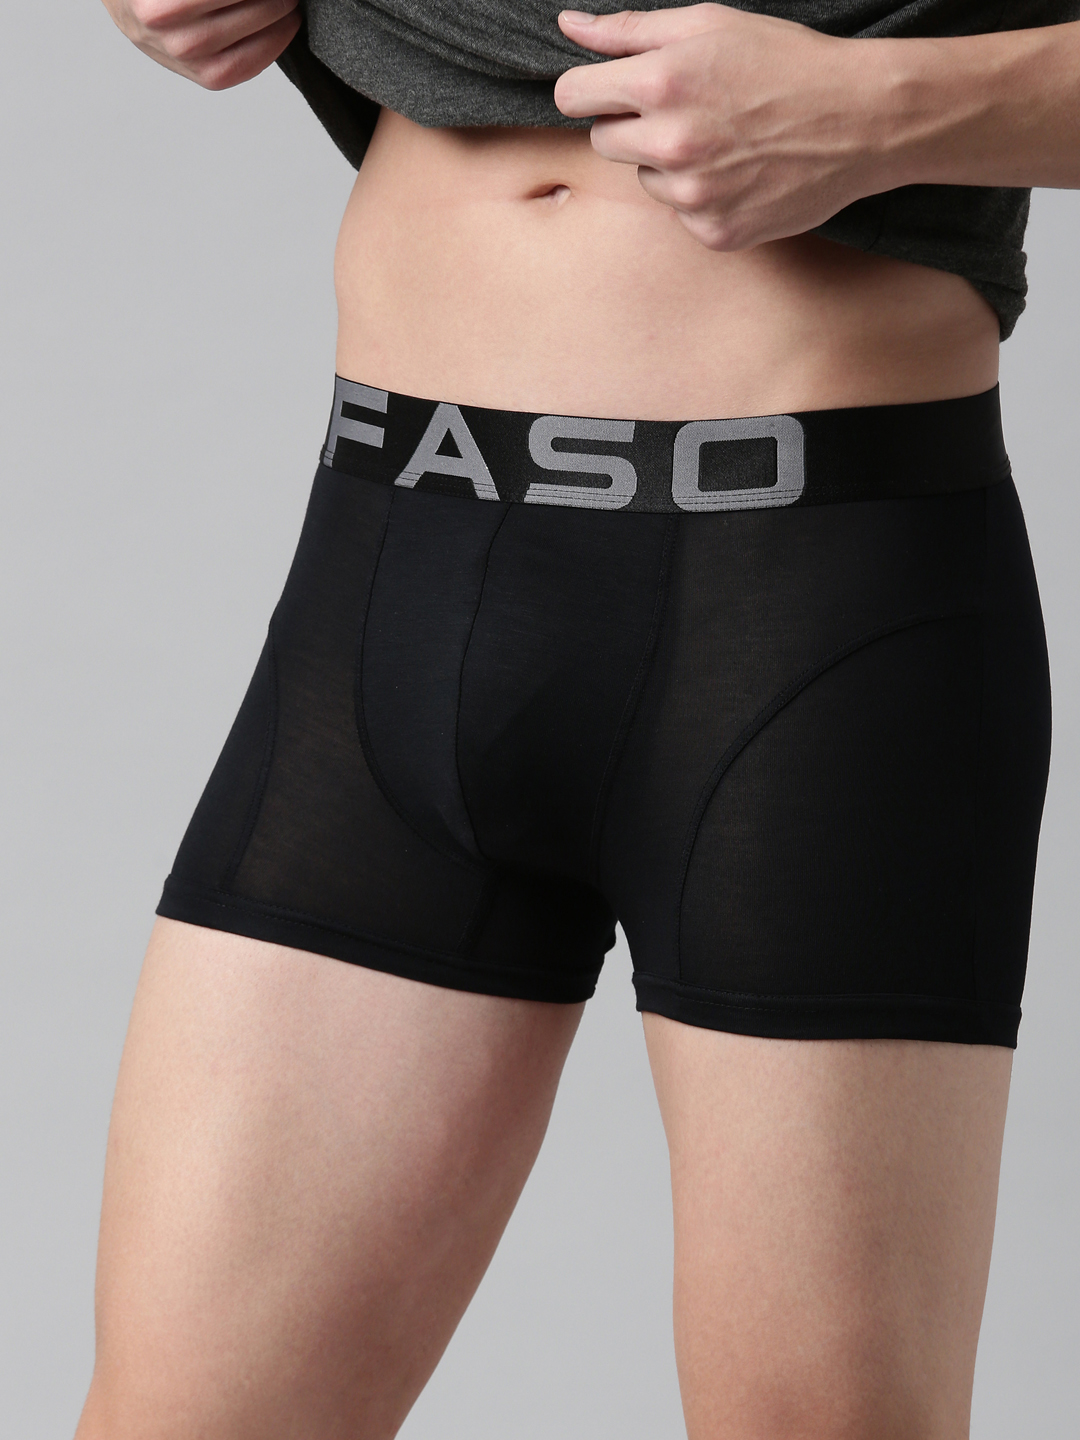 FASO - FASO premium men innerwear and athleisure. We believe